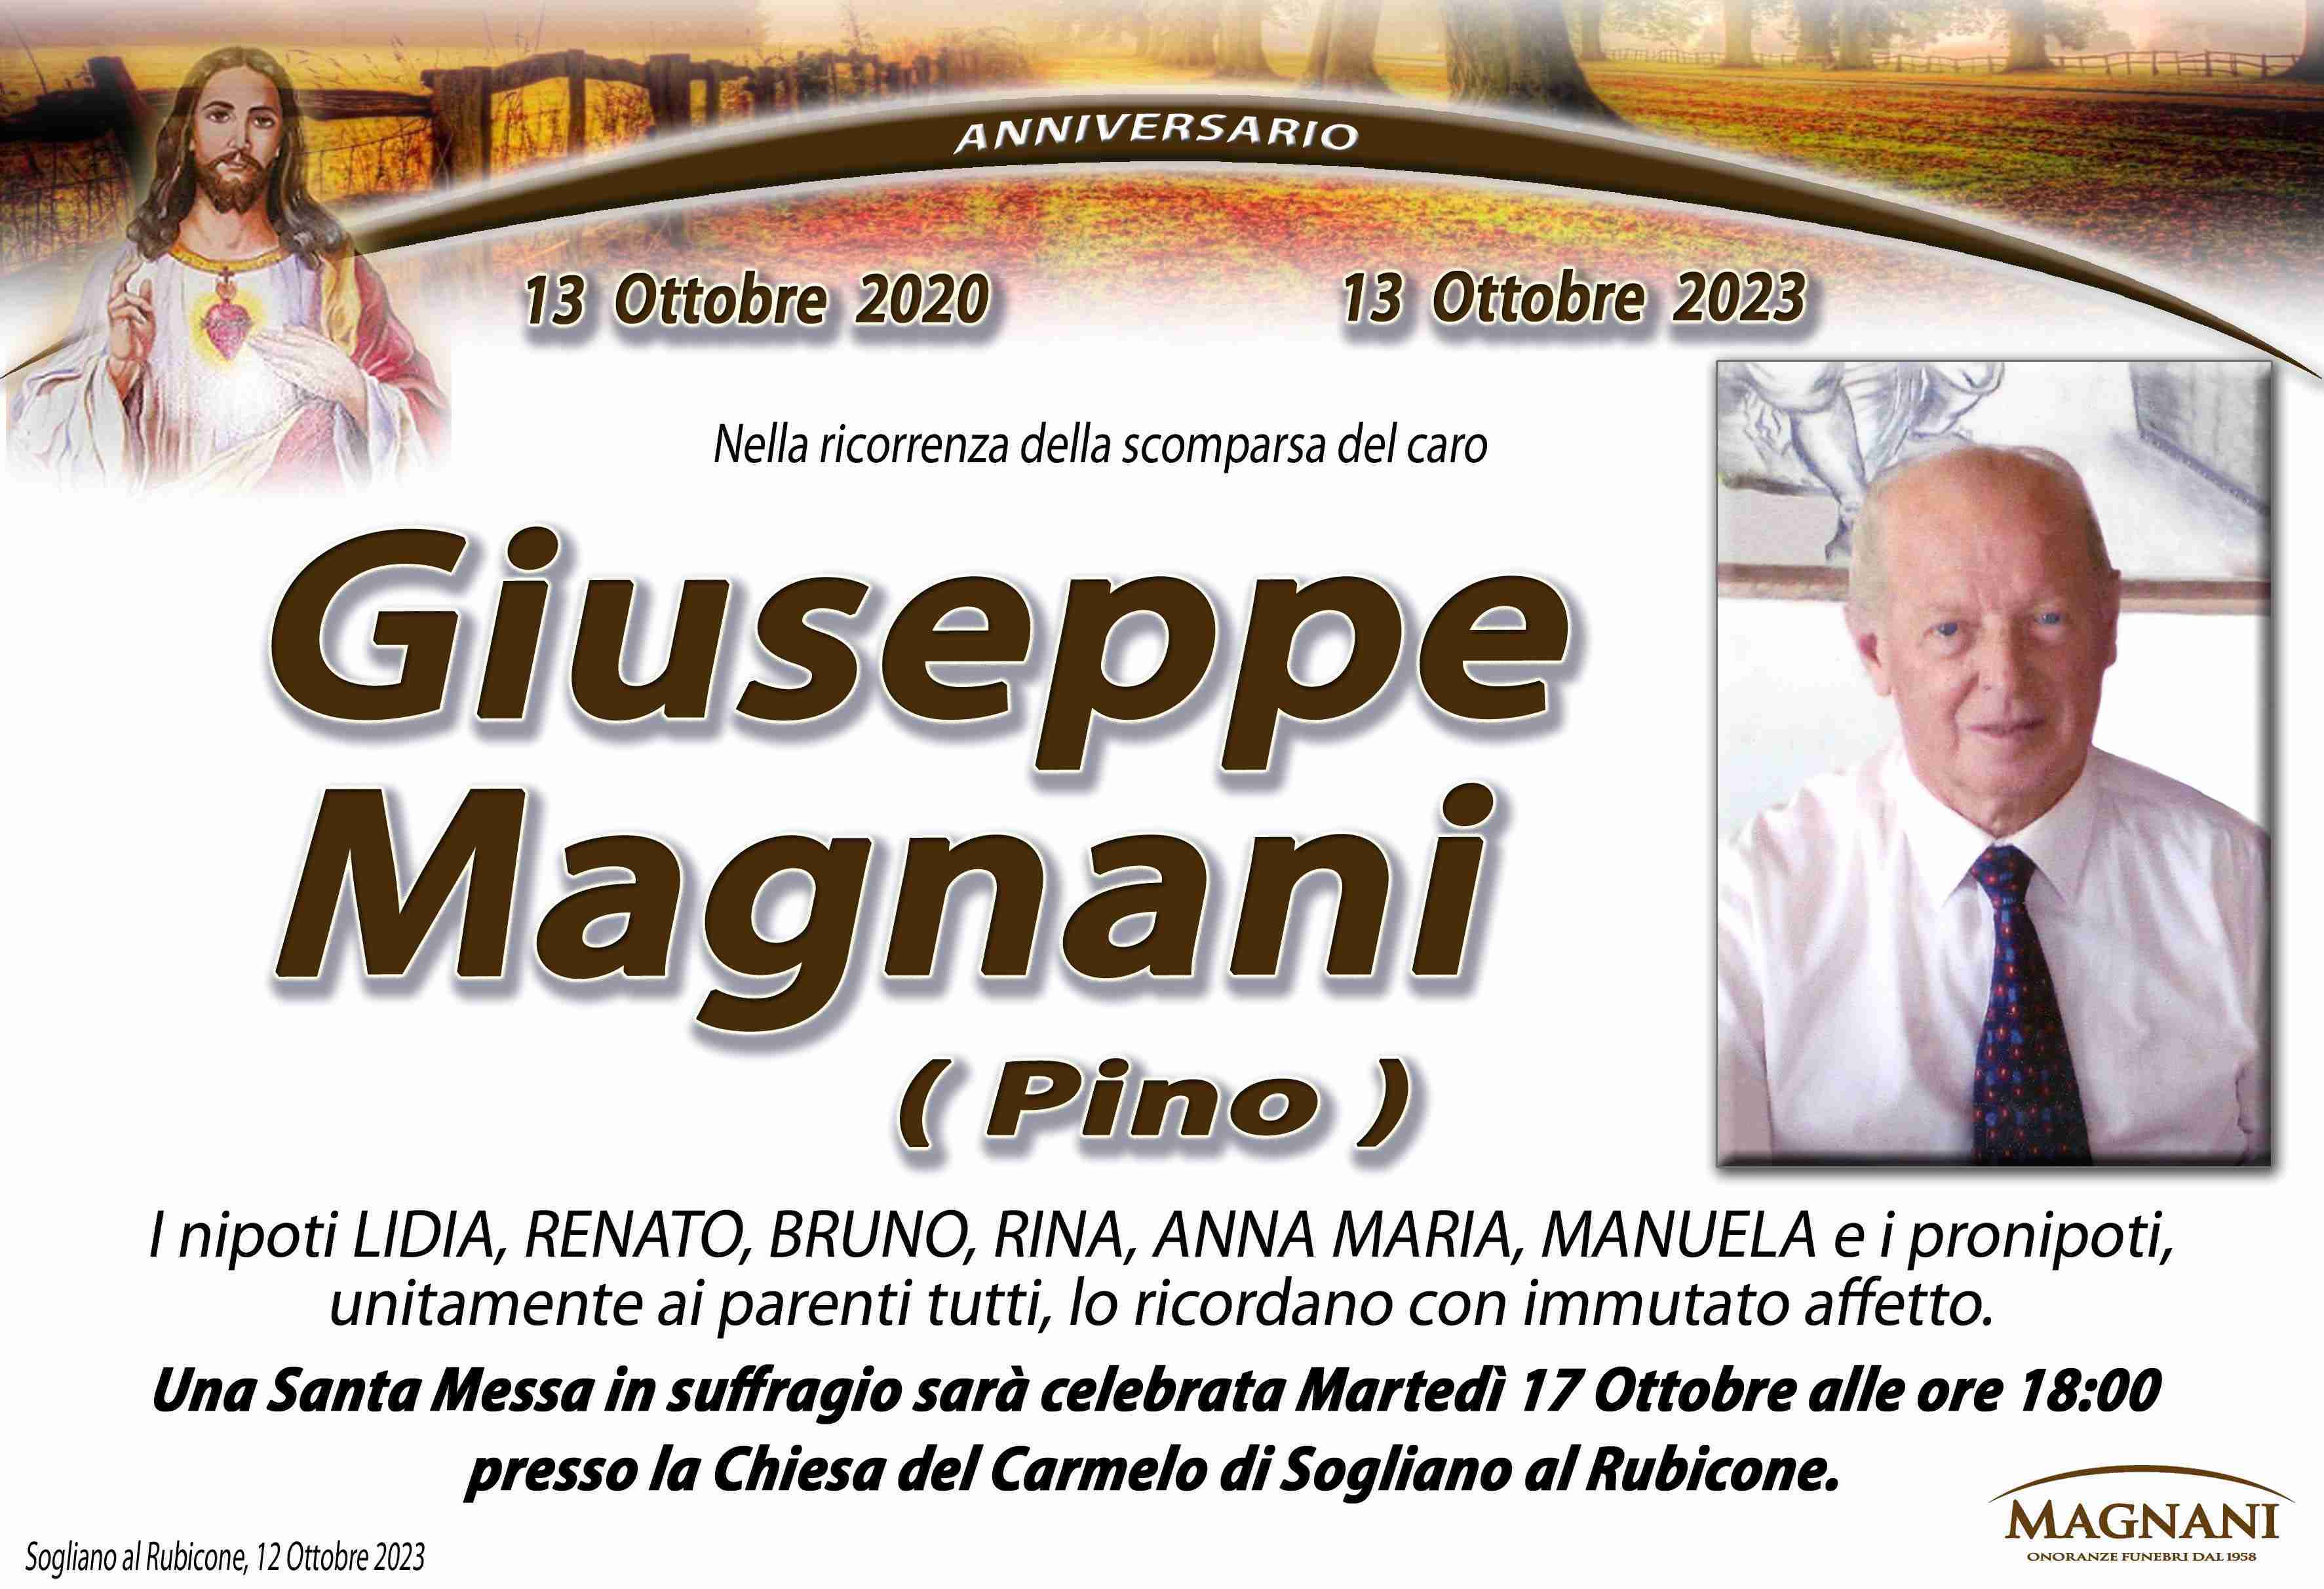 Giuseppe Magnani